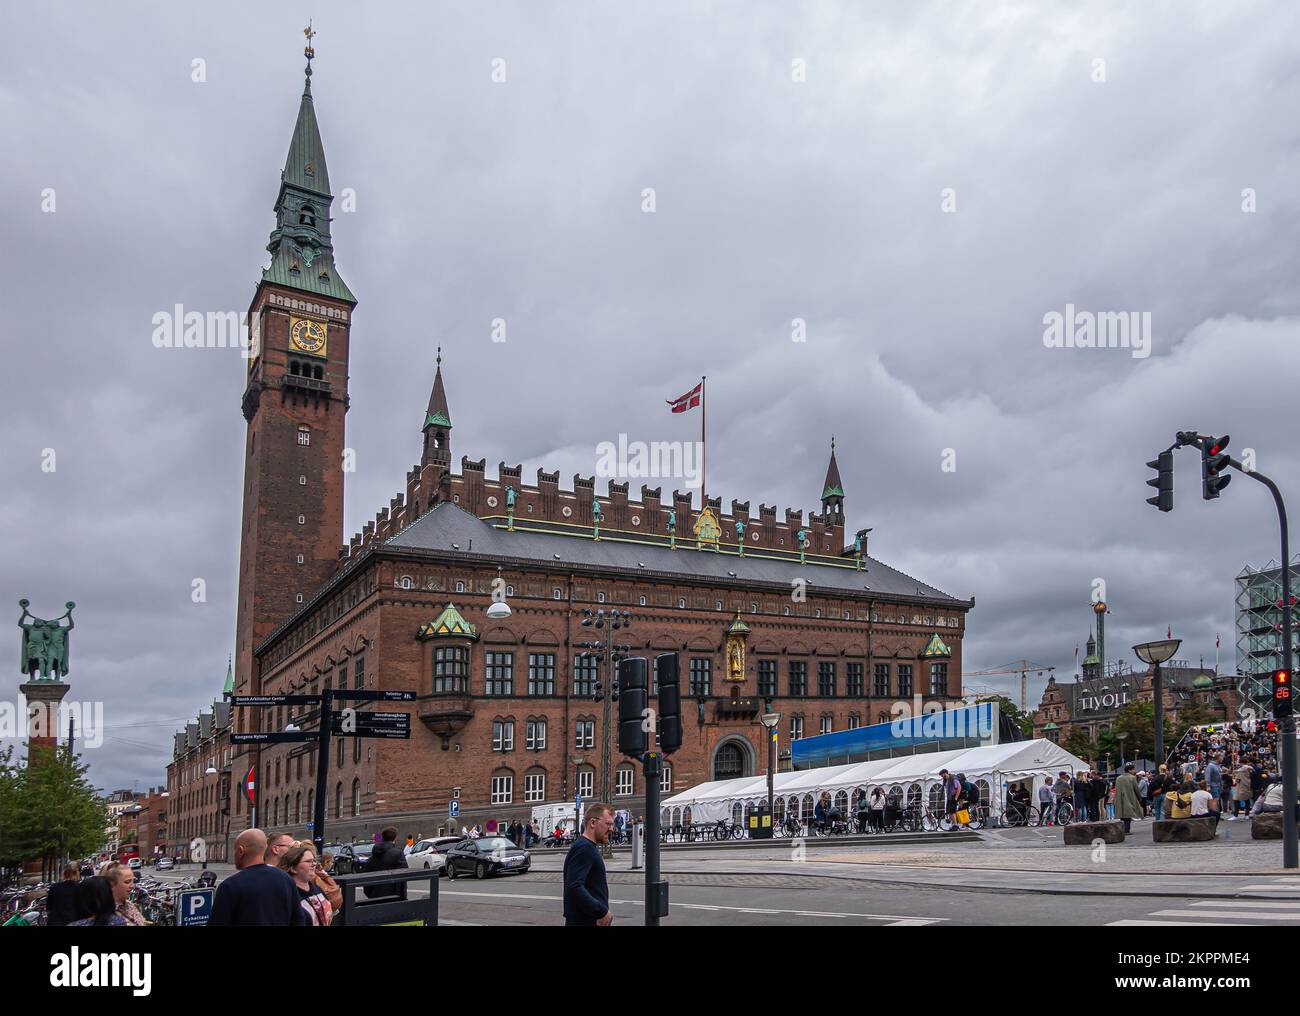 Copenaghen, Danimarca - 23 luglio 2022: Grande municipio in mattoni rossi con orologio e campanile domina dietro piazza Radhuspladsen molto trafficata sotto grigio cl Foto Stock